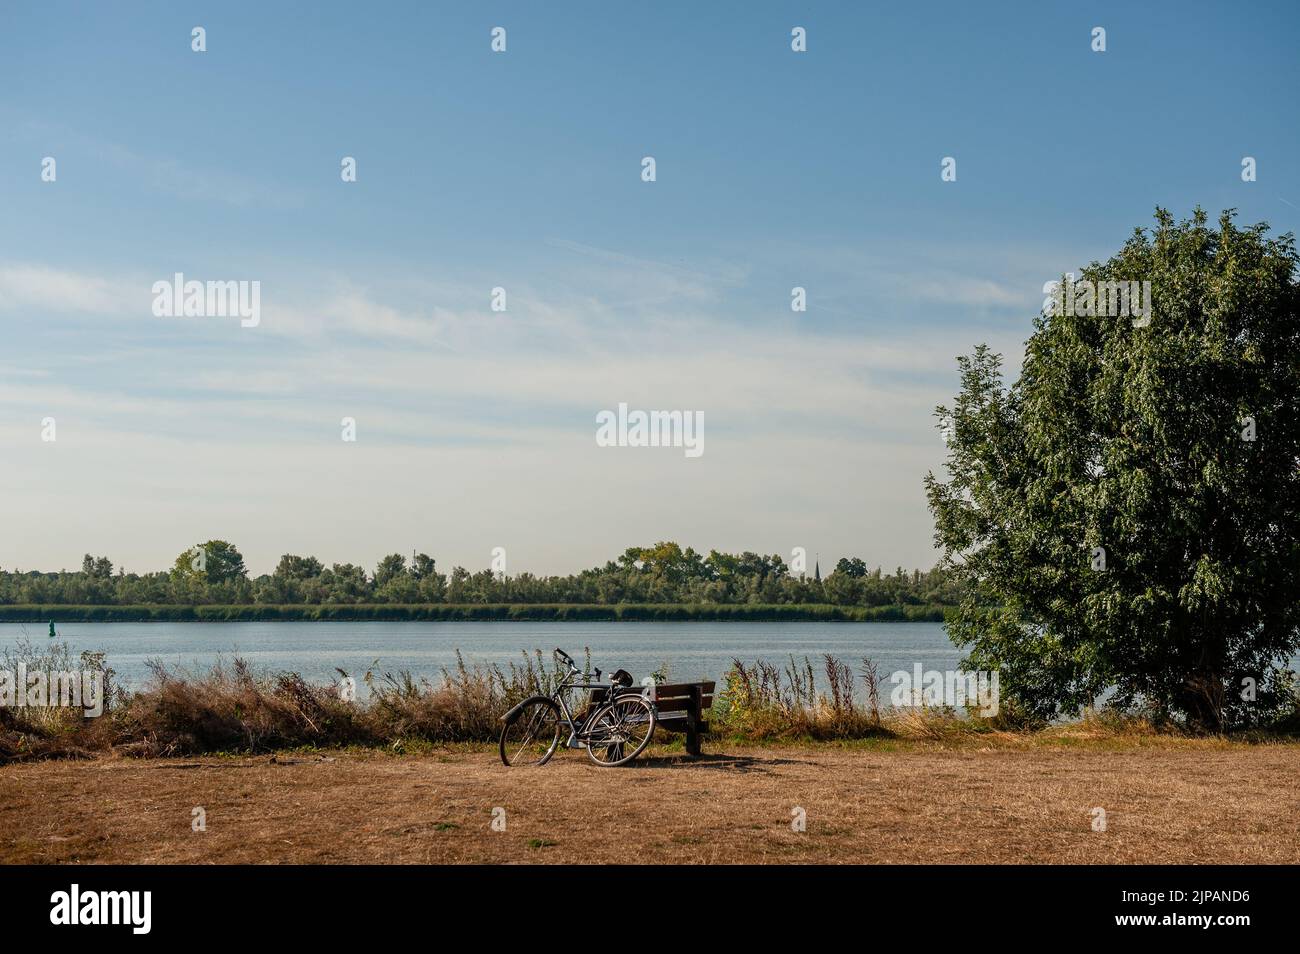 Ein Fahrrad gesehen geparkt neben einem Fluss und einem sehr trockenen Feld. Dieses Wochenende war offiziell der wärmste August 14. seit Beginn der Temperaturmessungen im Jahr 1901. Damit ist es der fünfte tropische Tag in Folge der Hitzewelle, die sich im Gange befindet. Stockfoto